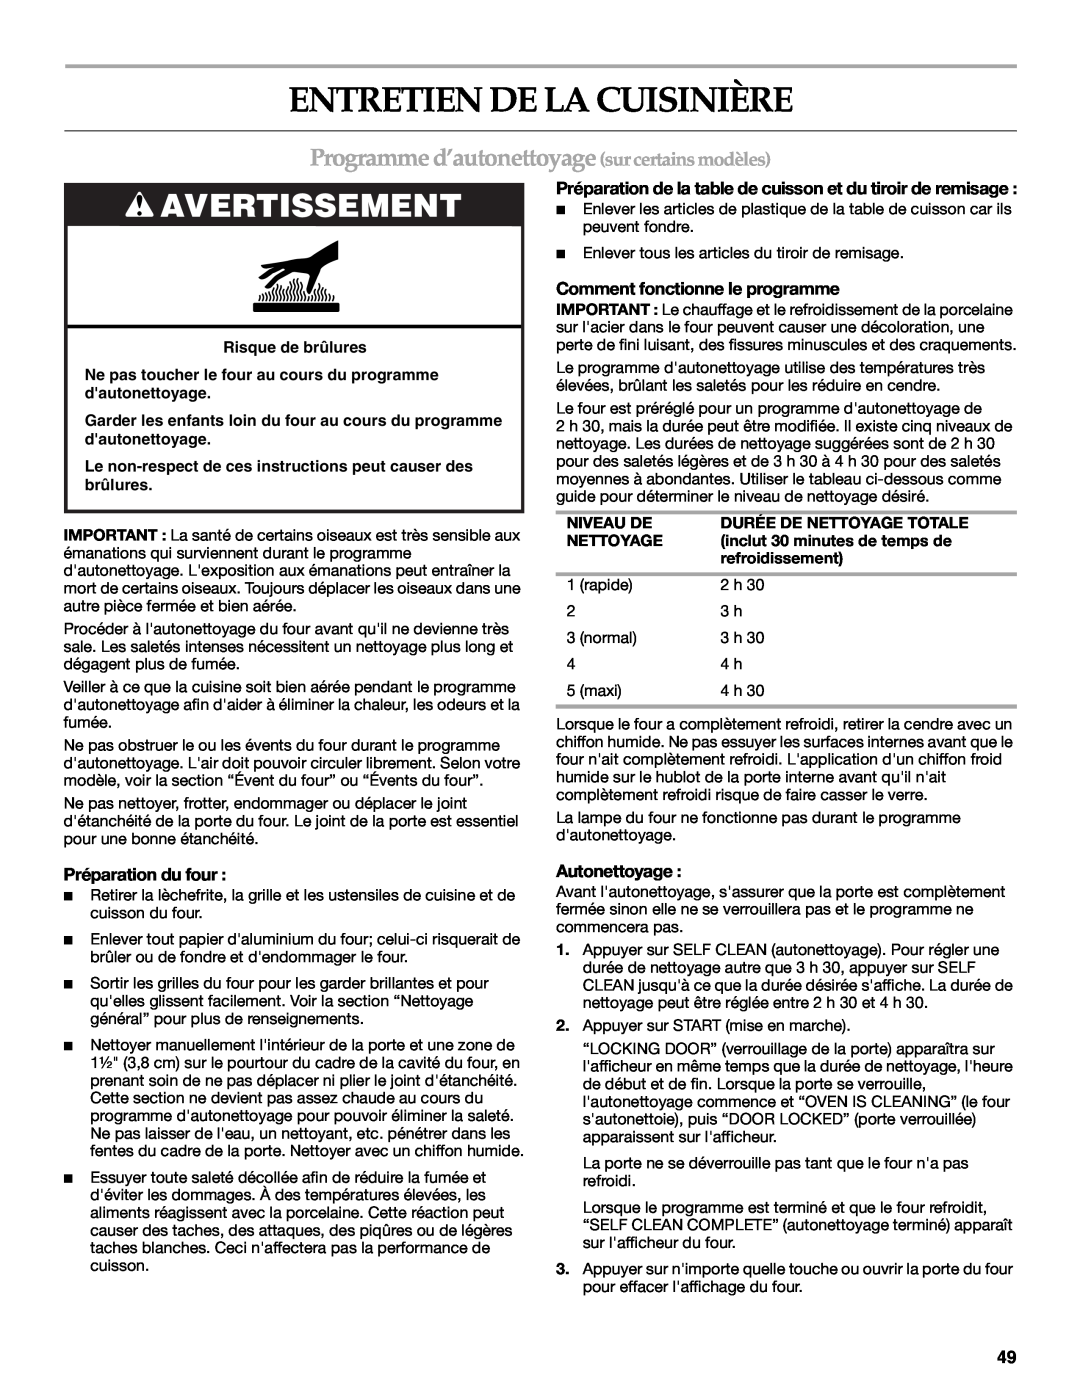 KitchenAid KGRS807 Entretien De La Cuisinière, Programme d’autonettoyage surcertains modèles, Avertissement, Autonettoyage 